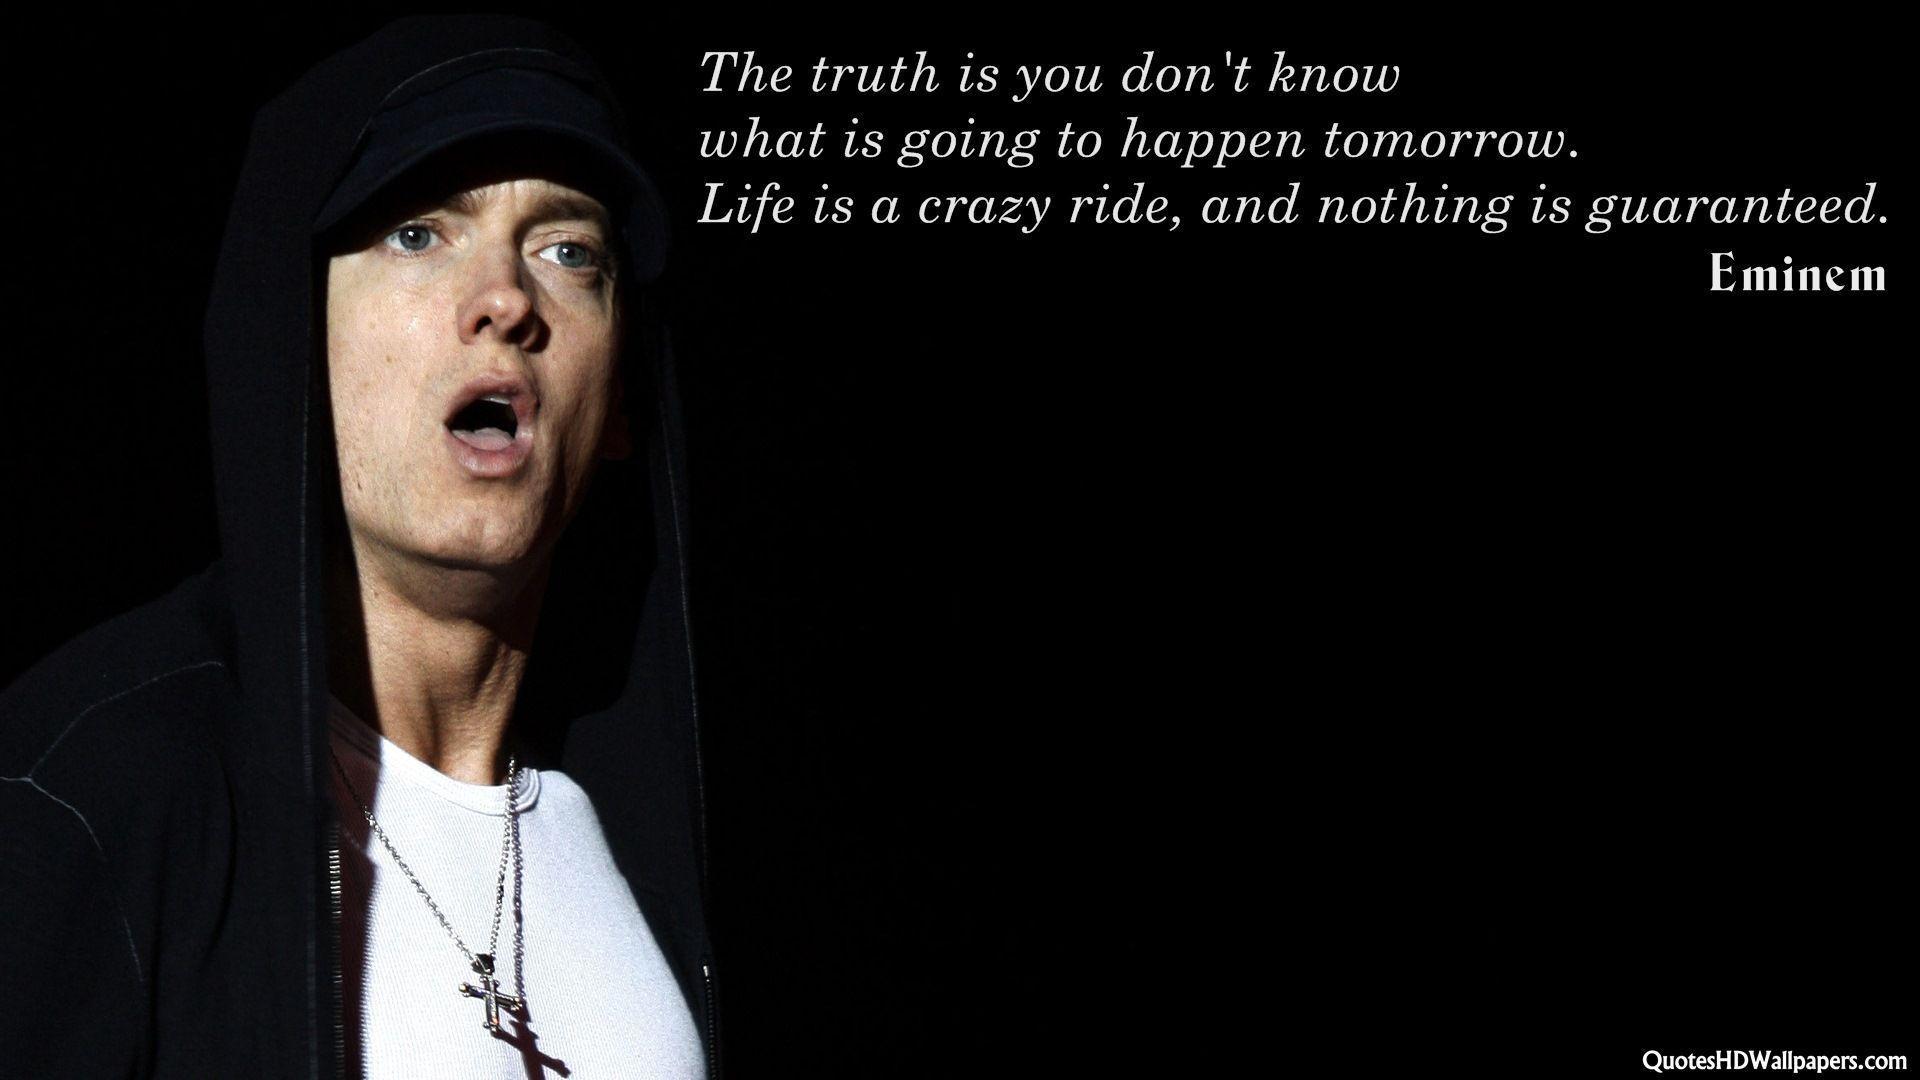 Eminem Quotes - Homecare24